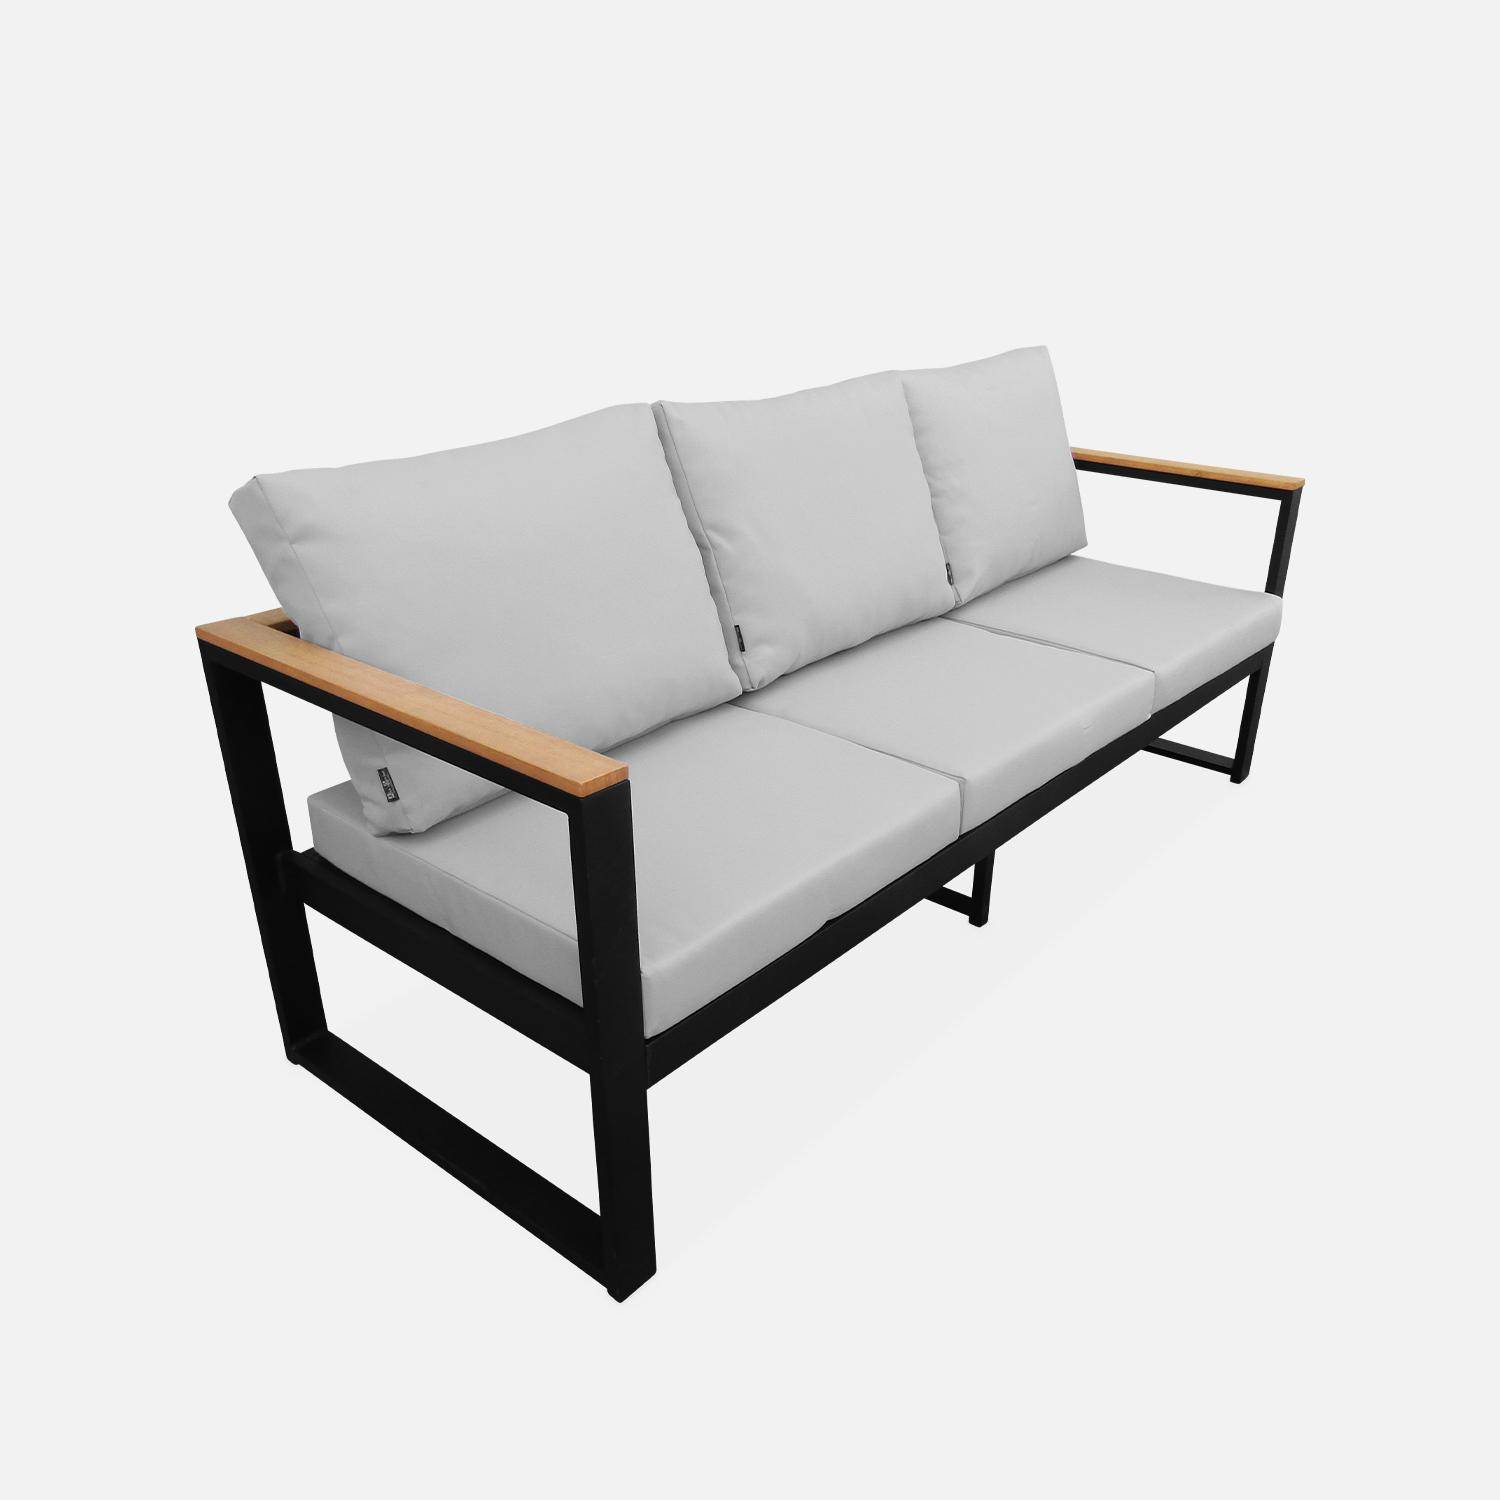 Conjunto de muebles de jardín de aluminio y eucalipto de 5 plazas - NAZCA - Estructura antracita, cojines gris claro Photo5